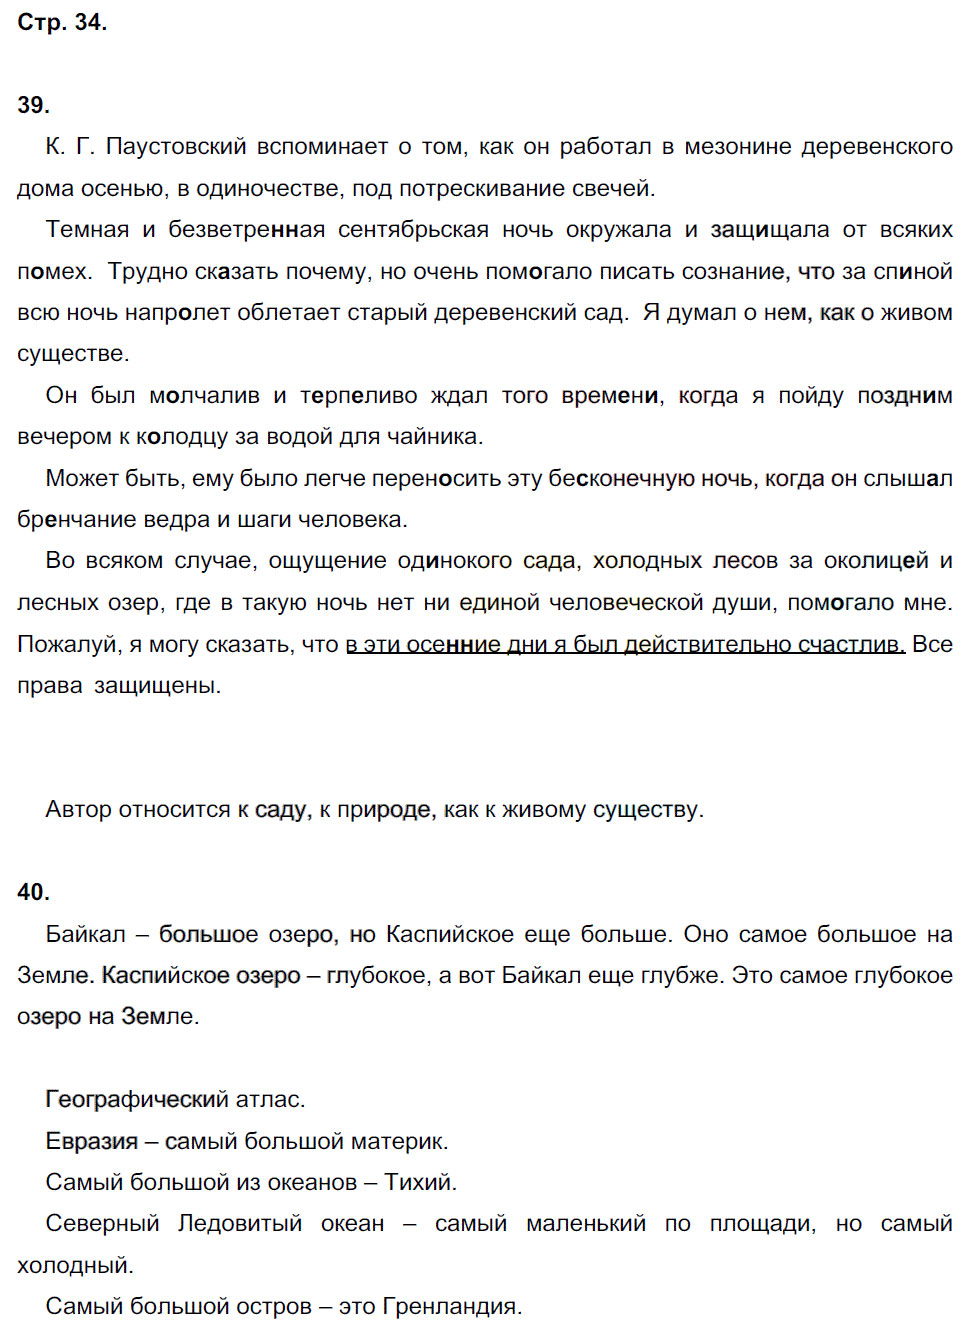 гдз 6 класс рабочая тетрадь часть 1 страница 34 русский язык Тростенцова, Дейкина